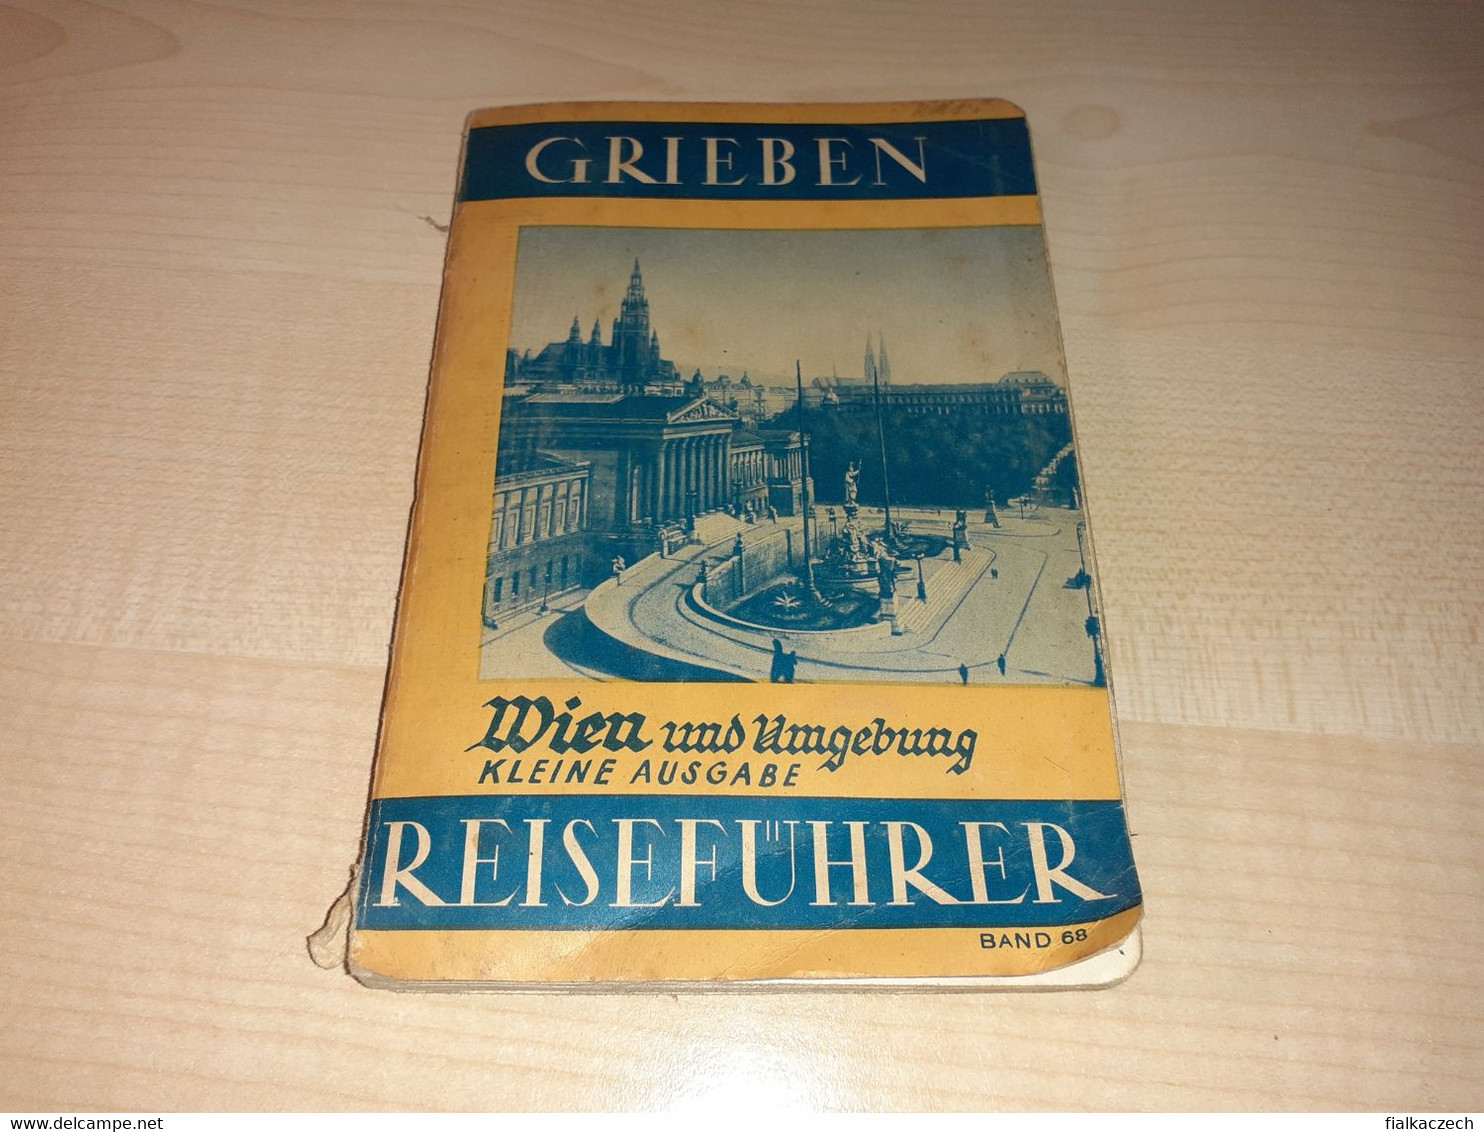 Grieben 1937, Wien Und Umgebung Kleine Ausgabe Reiseführer, Austria Tourist Guide, Tour Guide With Map, Karte - Autriche